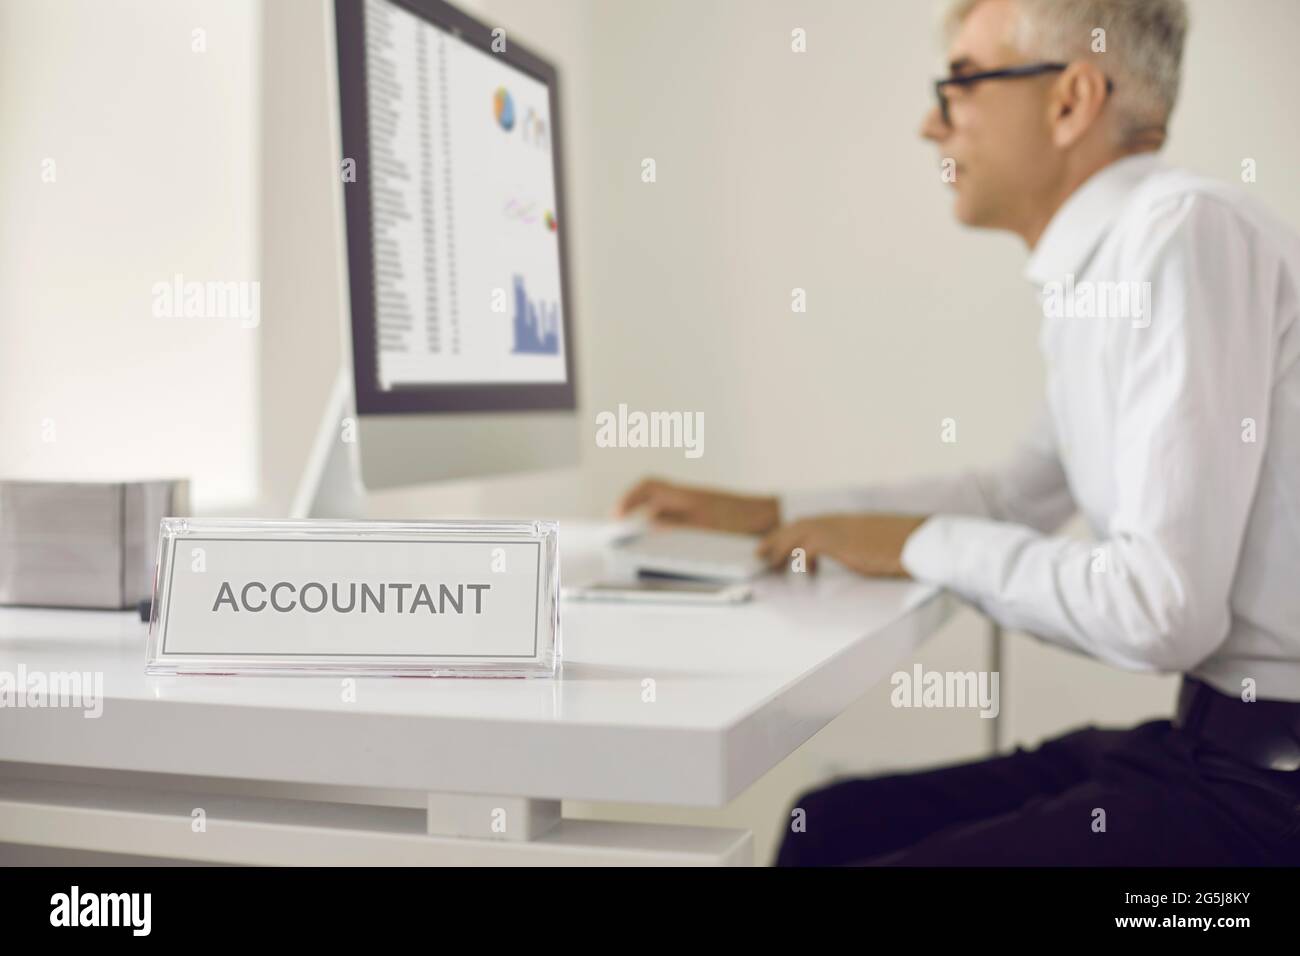 Plaque nominée qui lit comptable avec un homme travaillant sur un ordinateur en arrière-plan Banque D'Images